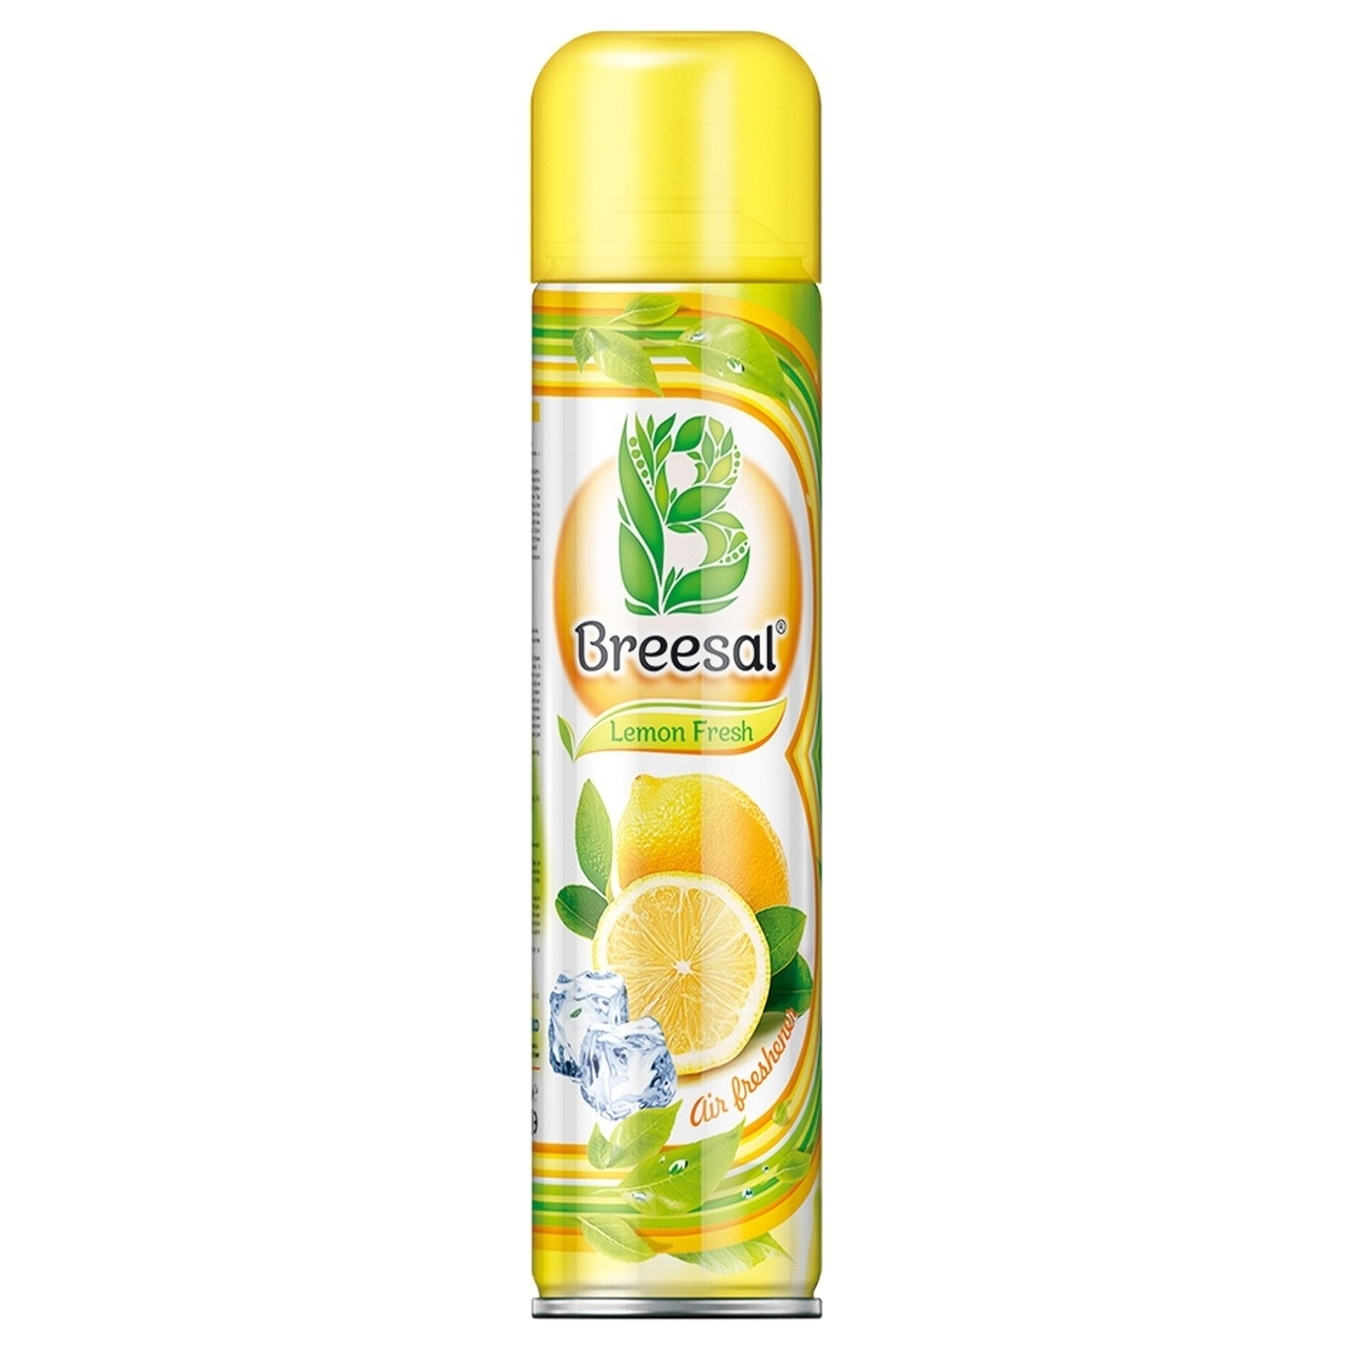 Air freshener Breesal Lemon freshness 300ml